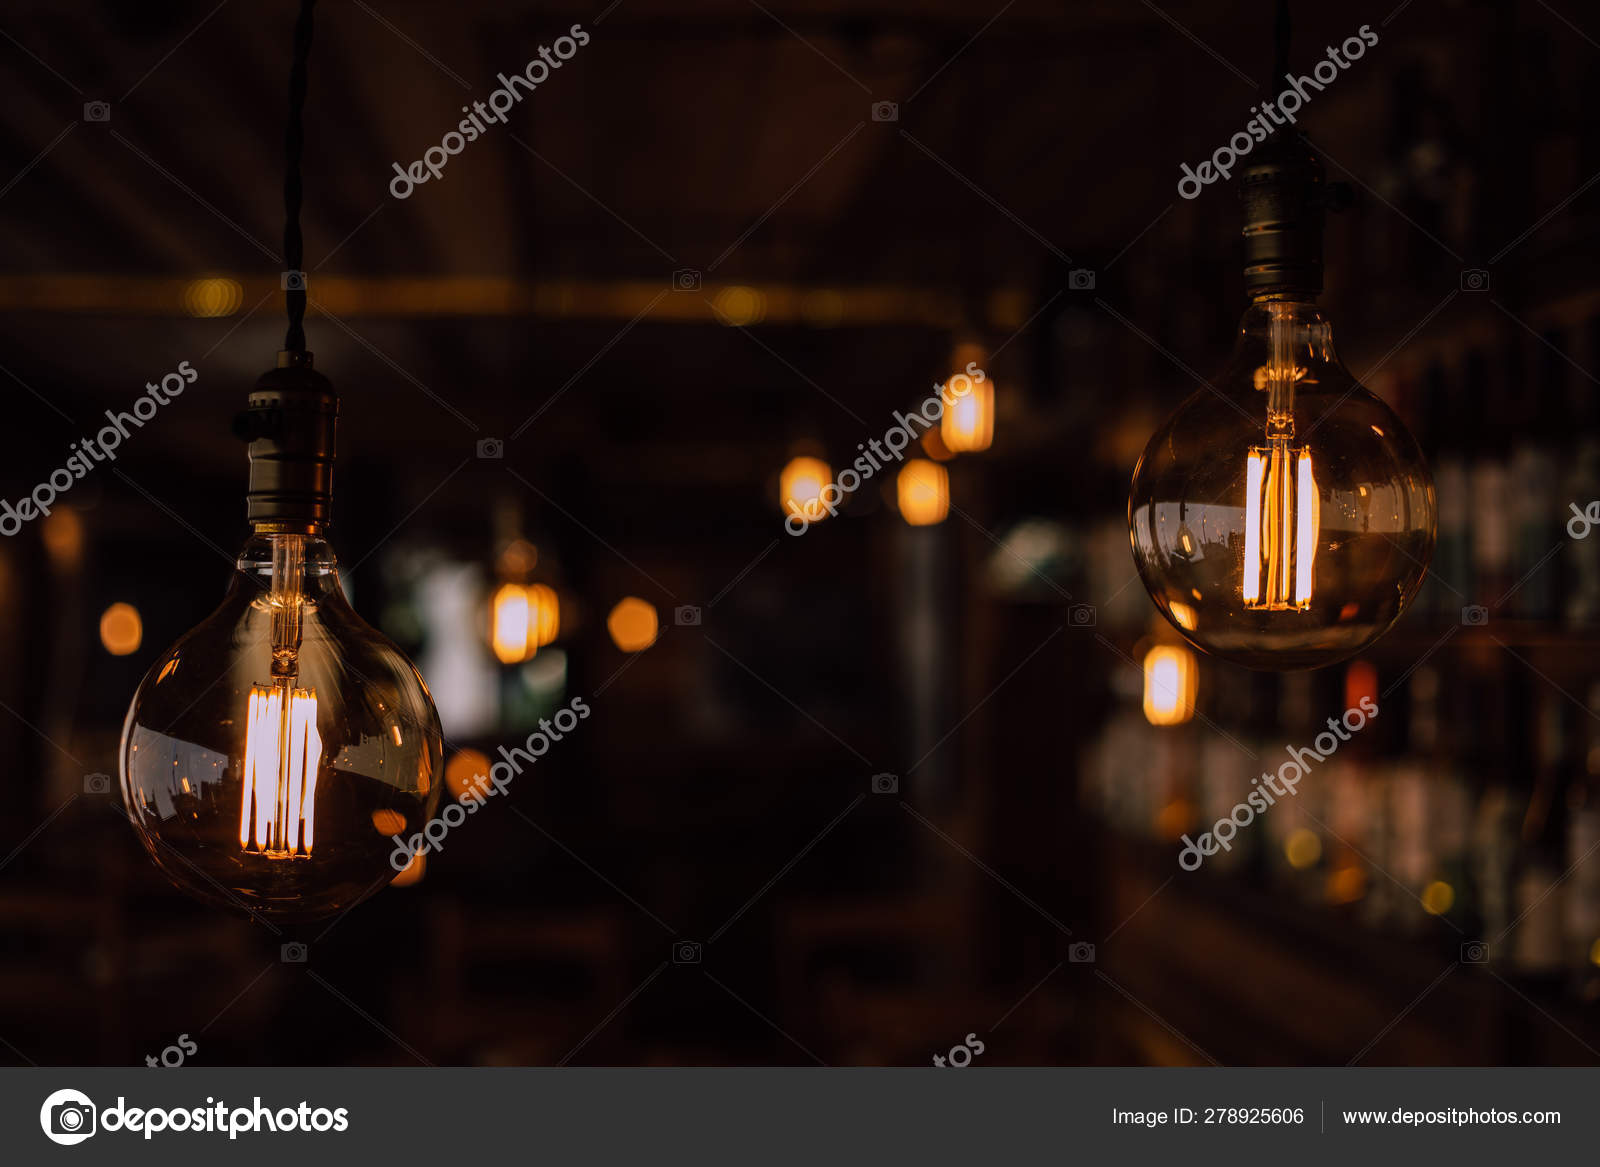  лампочка крупным планом с темным фоном стоковое фото ©gabriel .